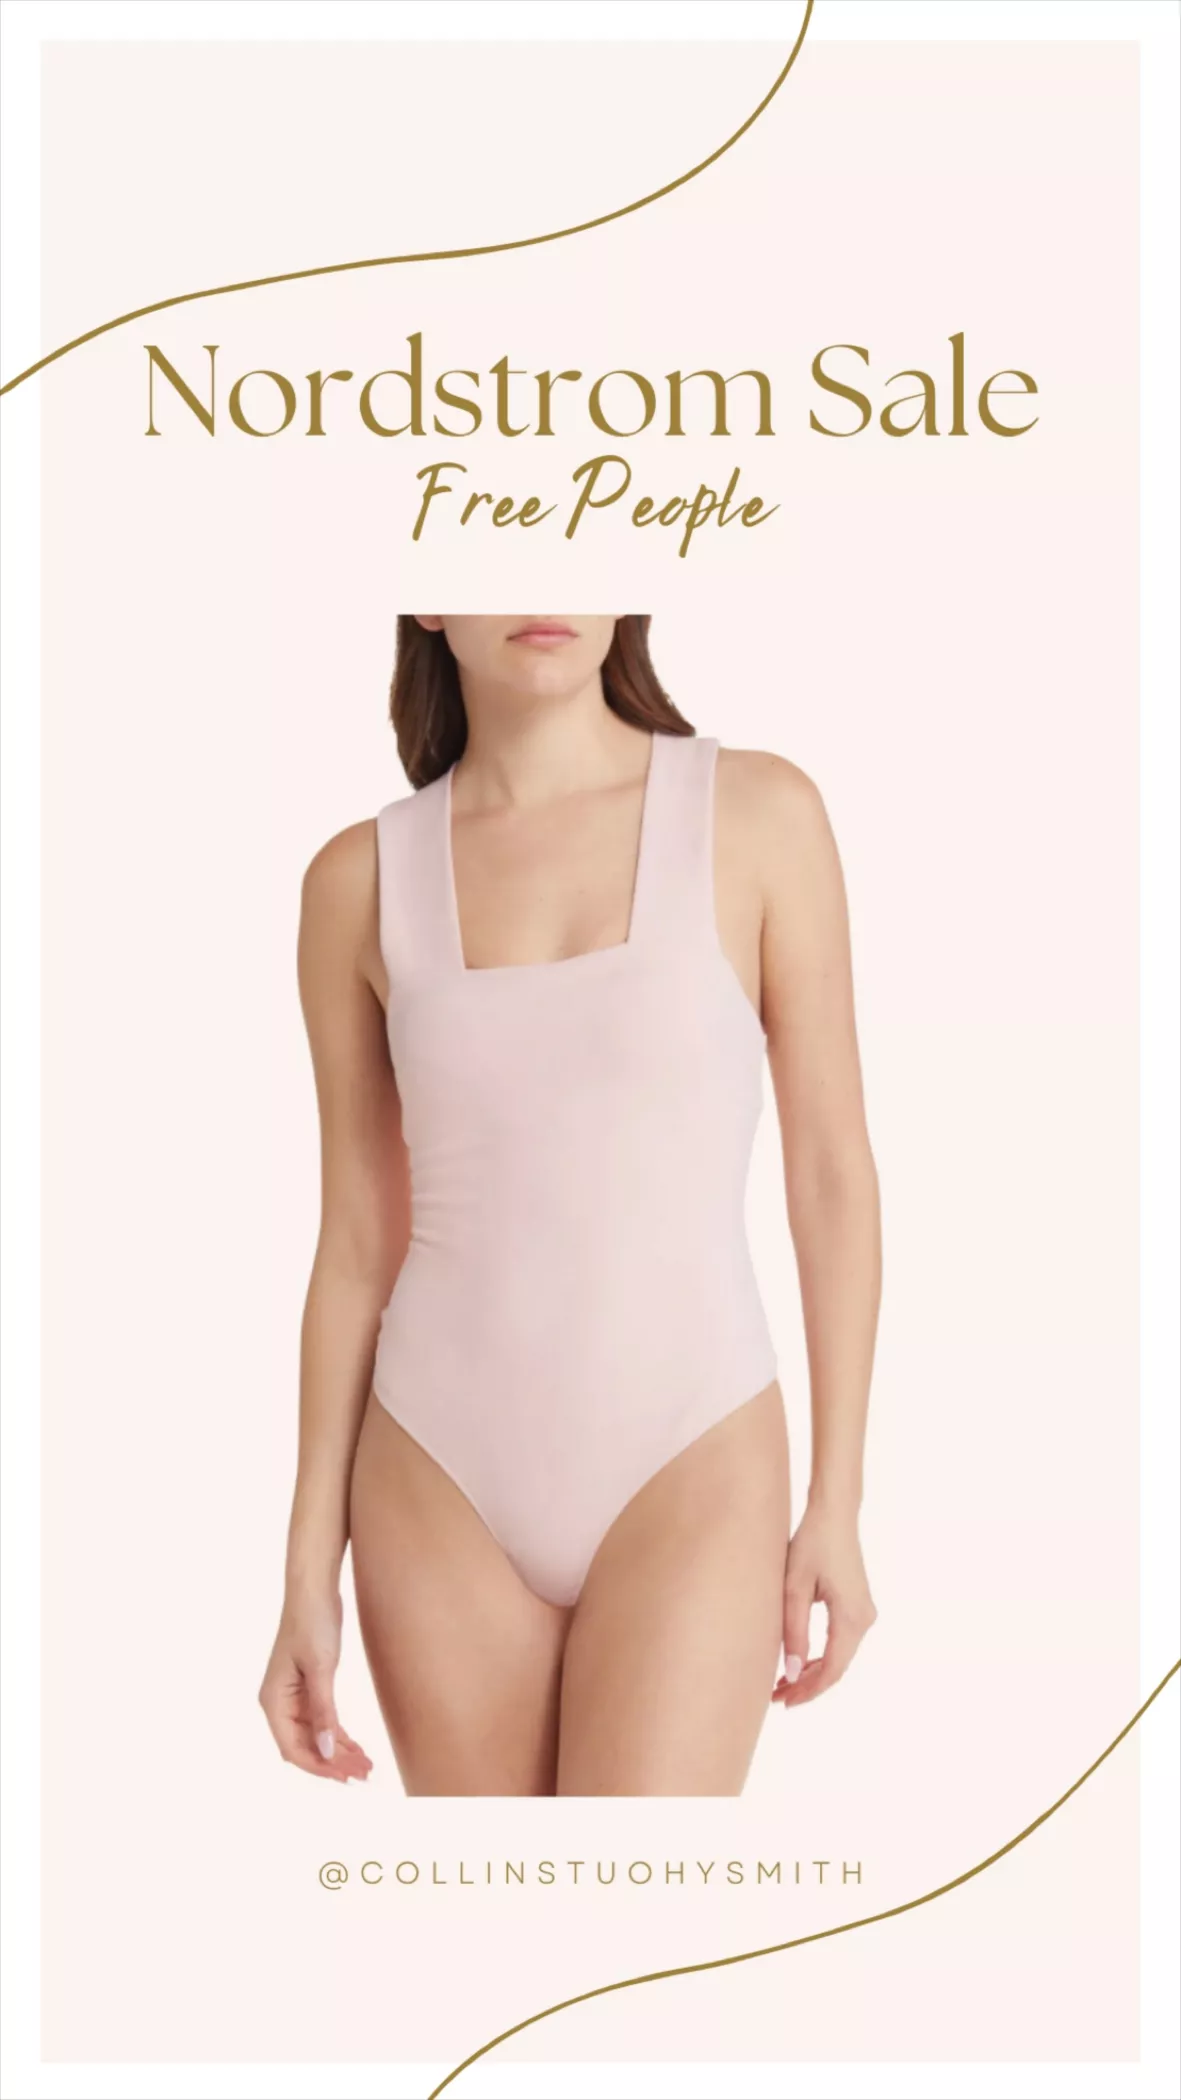 Free People - So Sleek Body suit